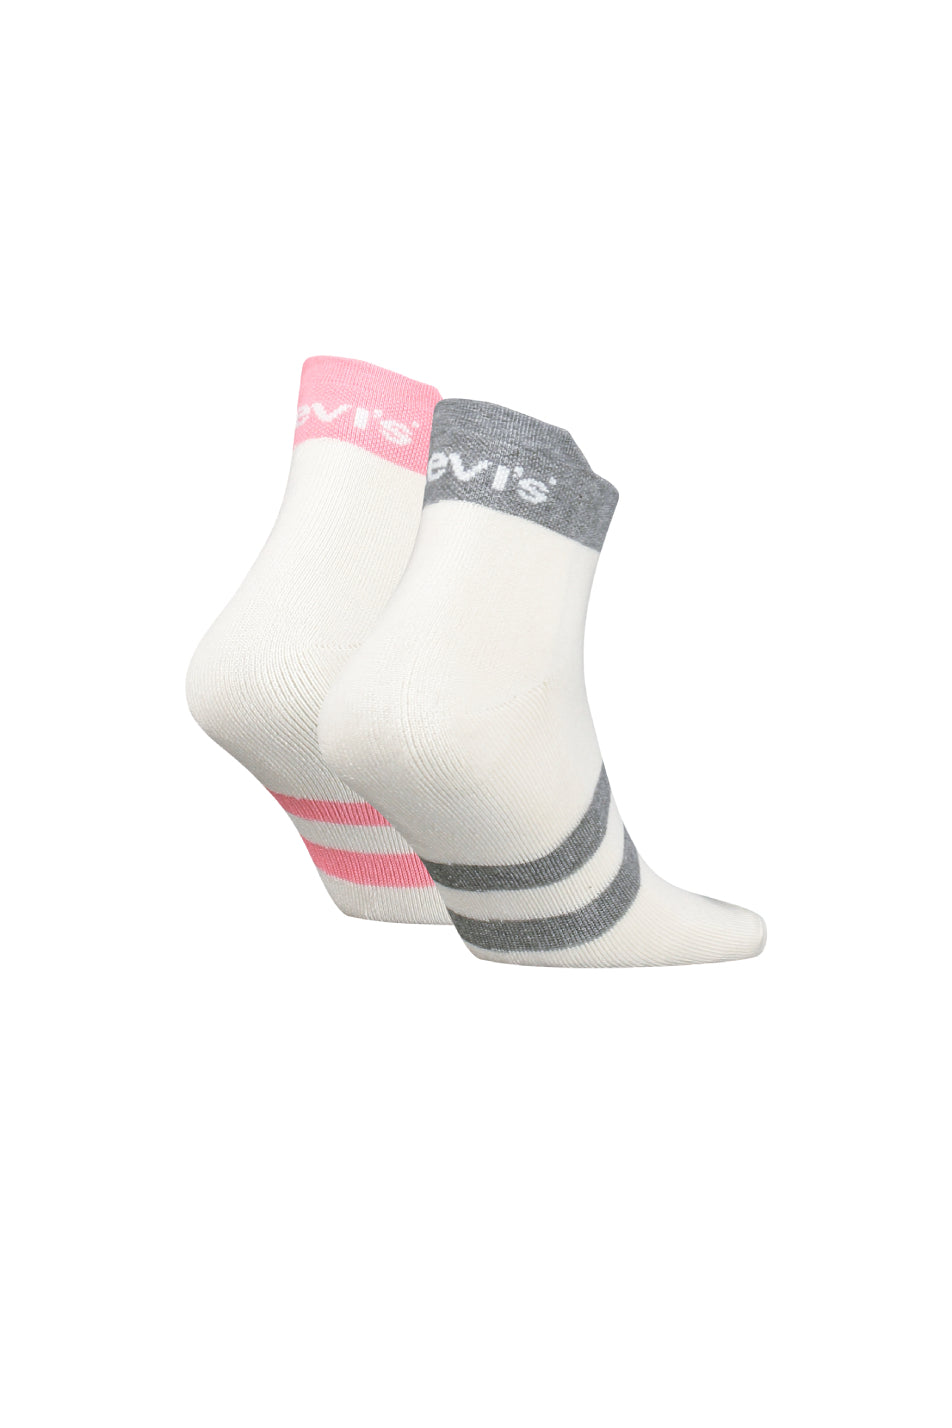 Levi's 2 Pack Unisex Mid Cut Socks